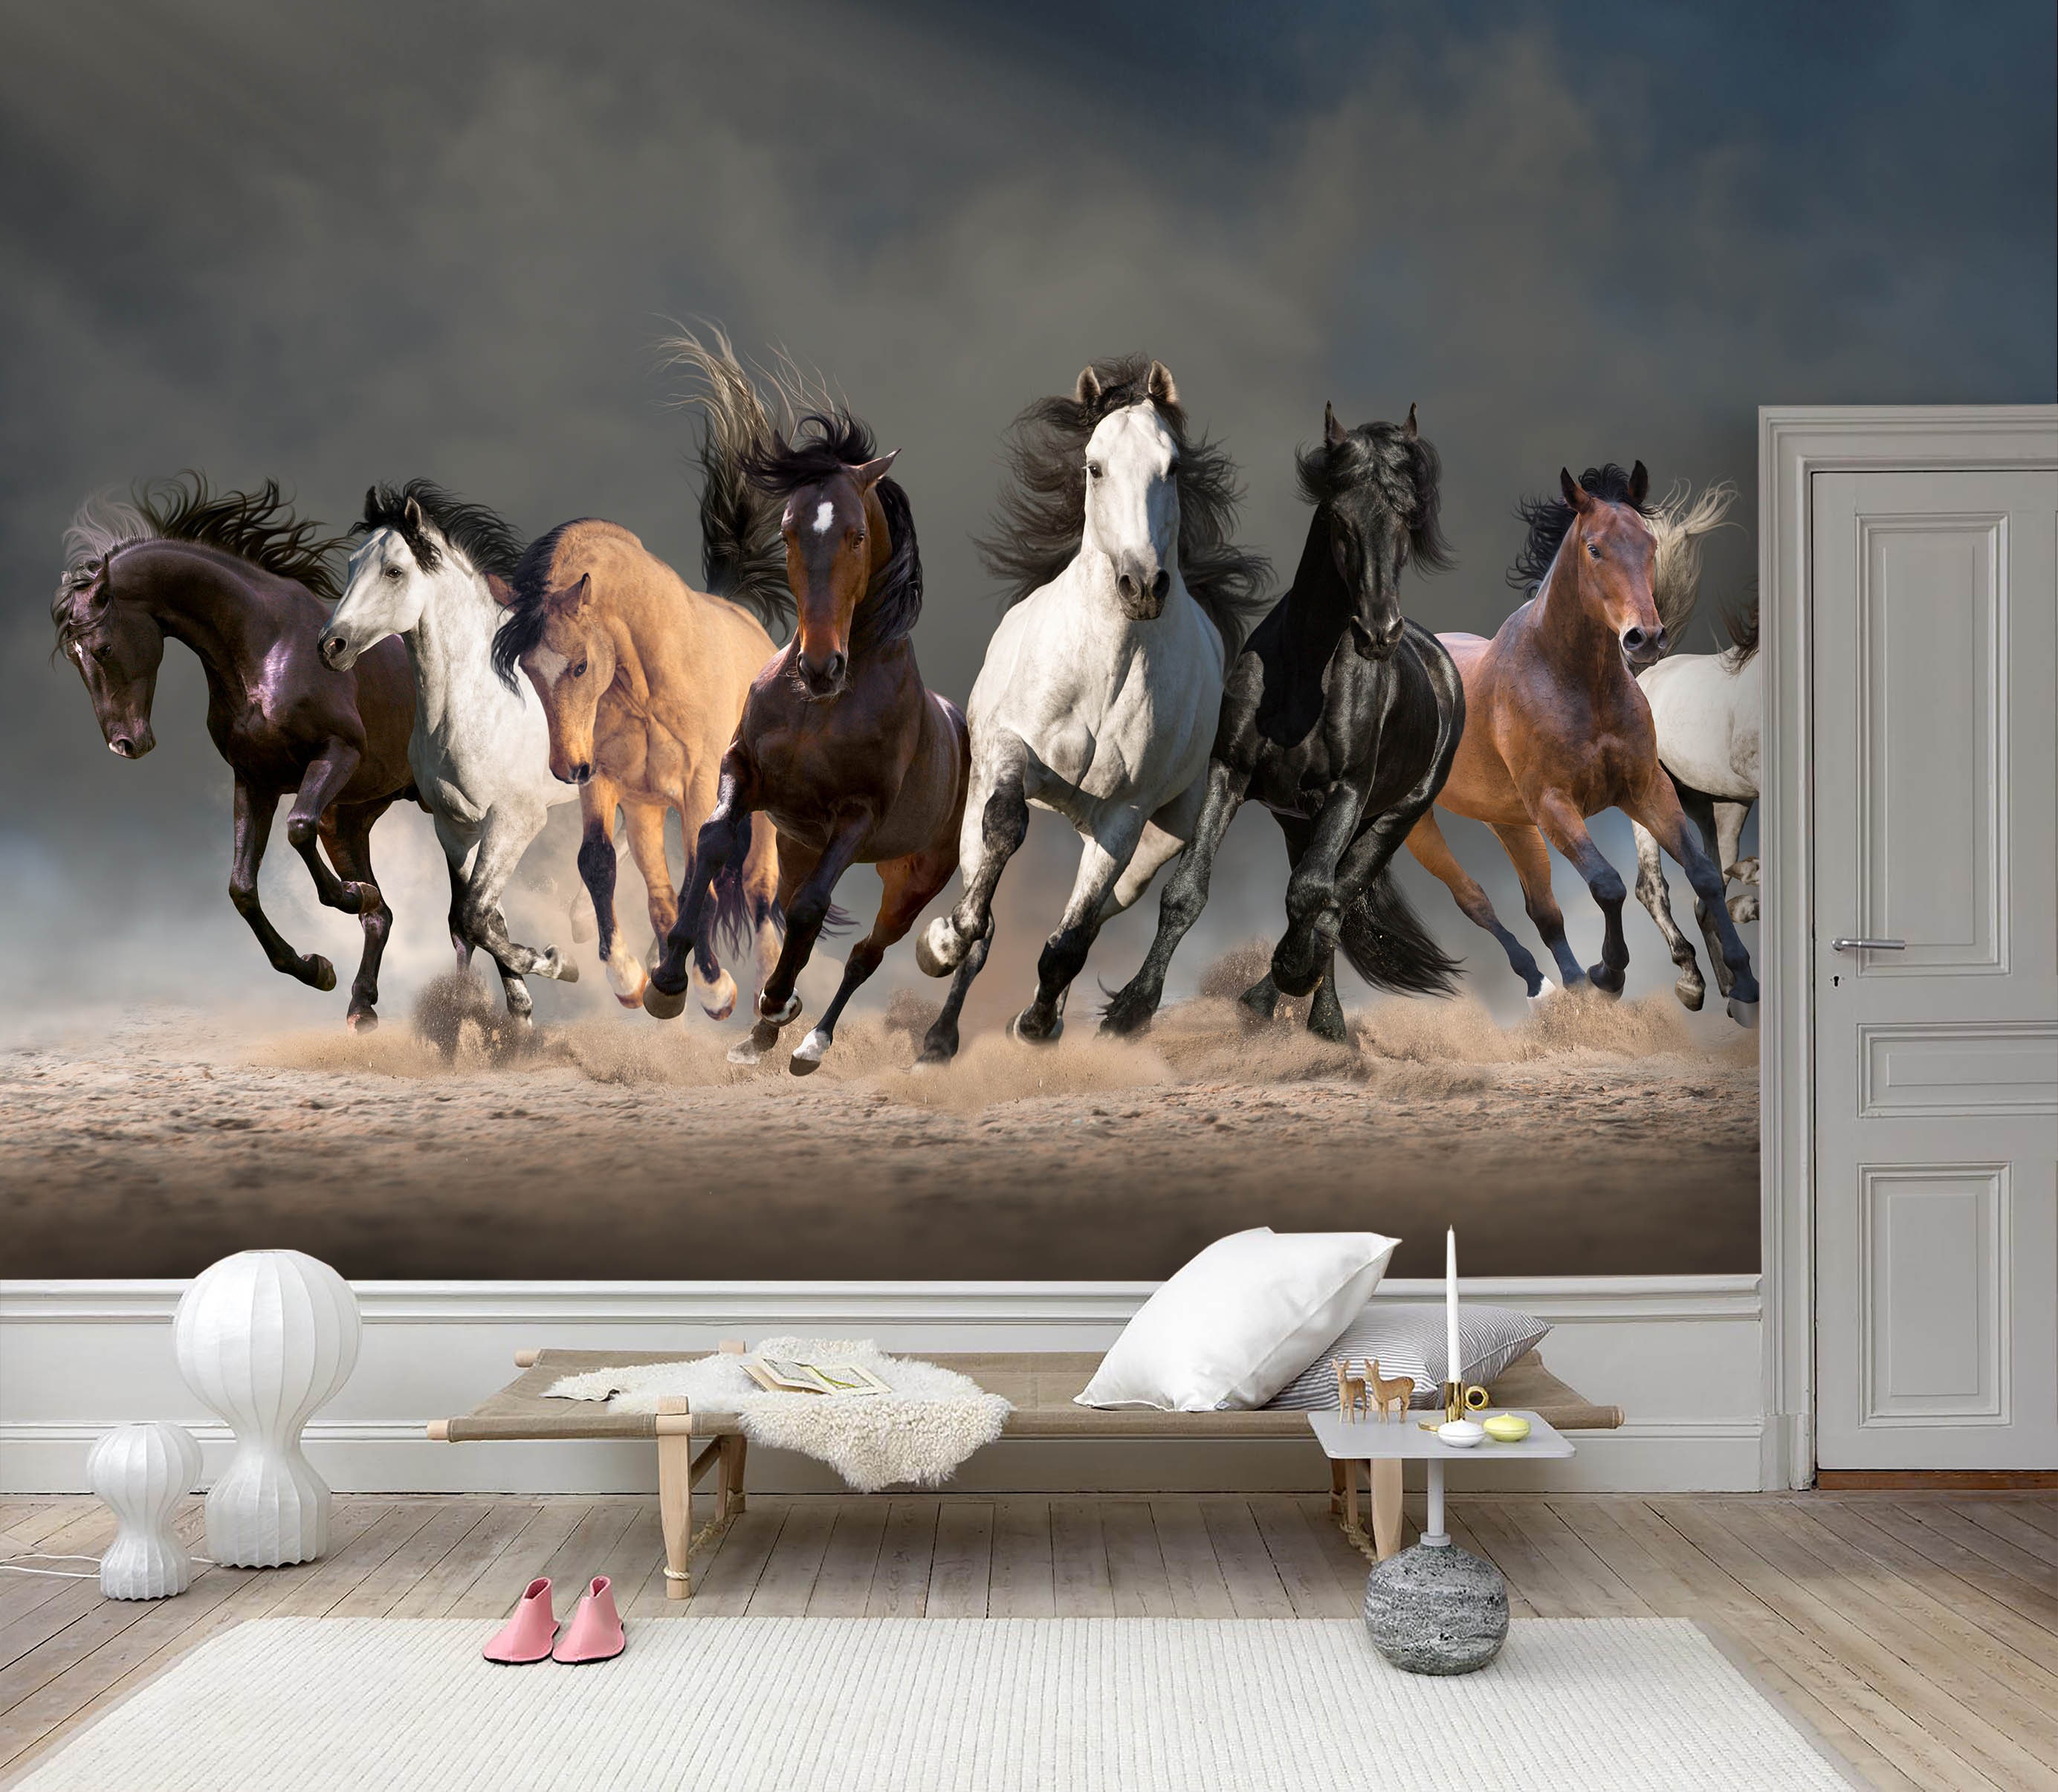 Tranh 3D tám con ngựa chạy thông tầm Etsy: Sự kết hợp giữa nghệ thuật và công nghệ đã cho ra đời một sản phẩm độc đáo - Tranh 3D tám con ngựa chạy thông tầm Etsy. Với công nghệ in 3D hiện đại, một bức tranh như thật với tám con ngựa chạy thông tầm sẽ làm cho không gian sống của bạn trở nên sống động và đầy màu sắc.